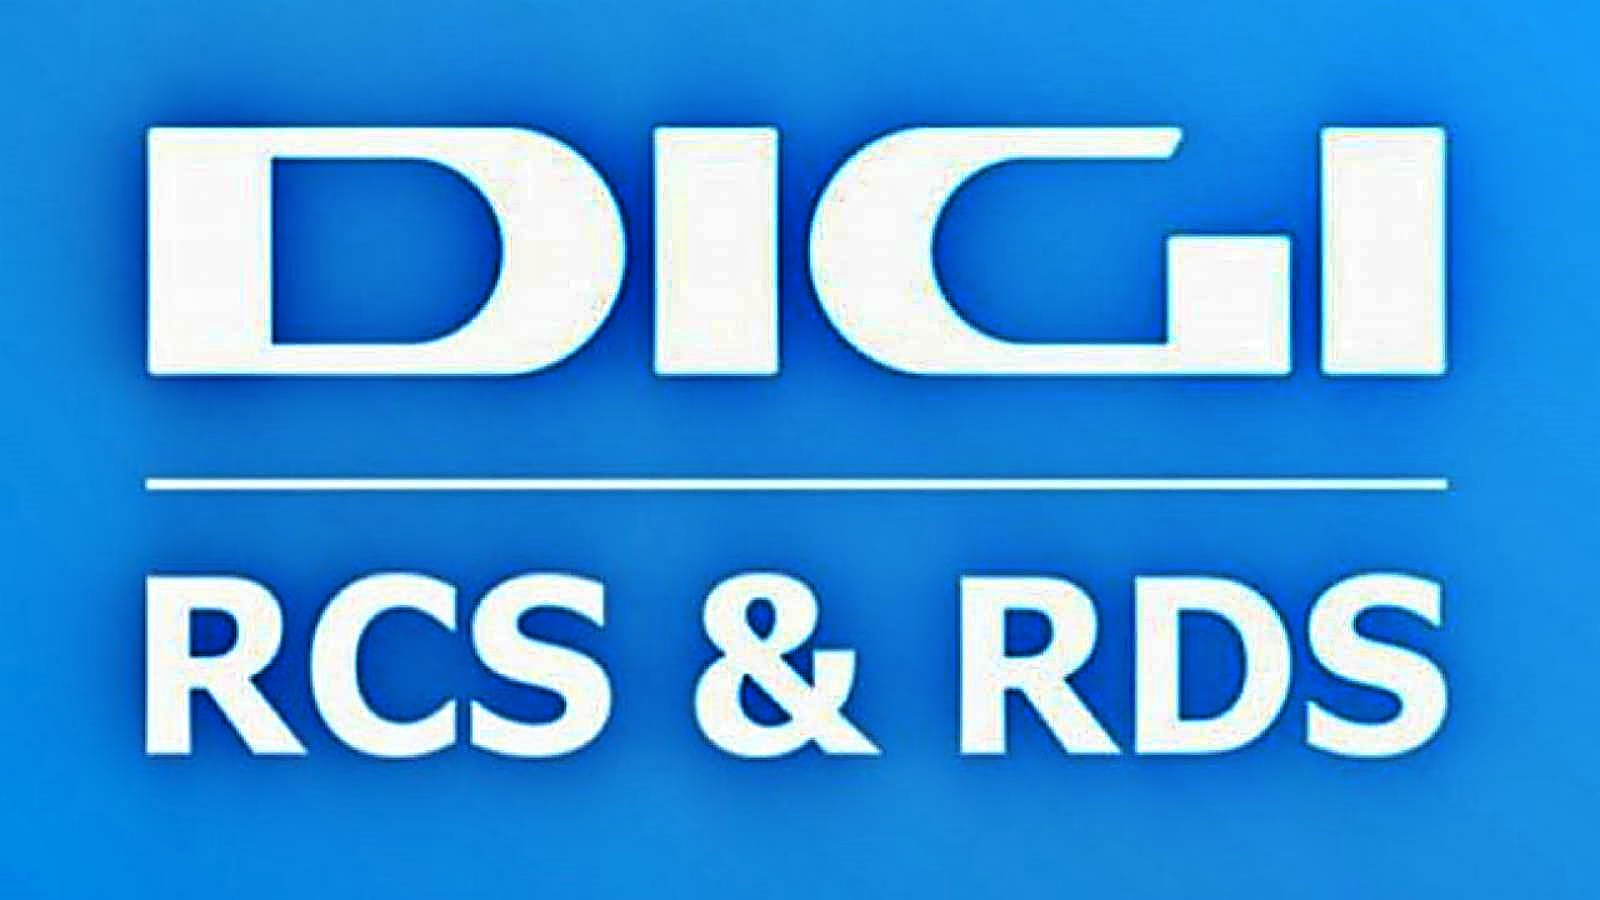 DIGI RCS & RDS MAJOR-maatregel officieel vastgesteld, die klanten de halve prijs biedt